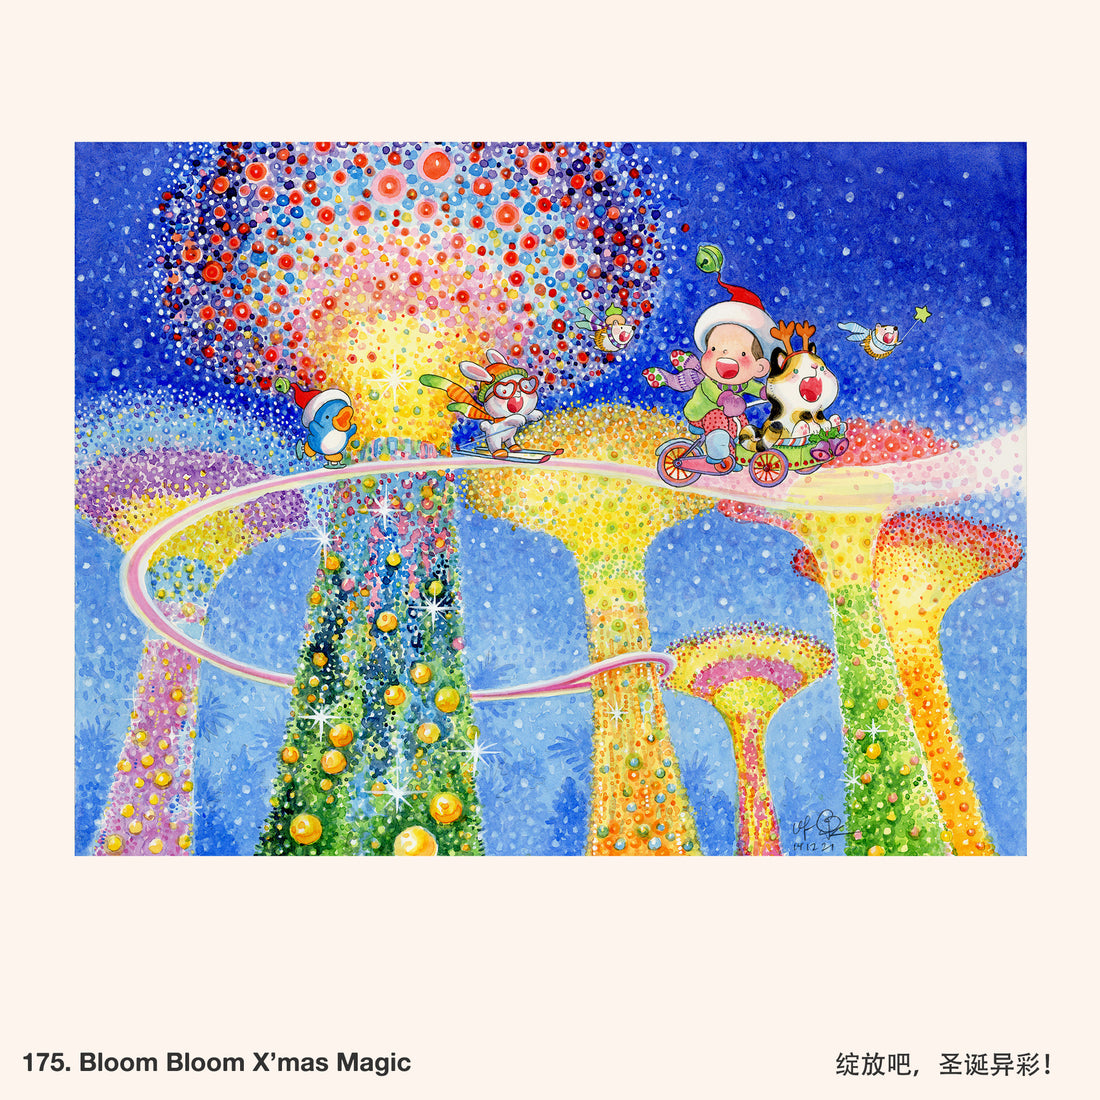 175. Bloom Bloom X'mas Magic Artwork